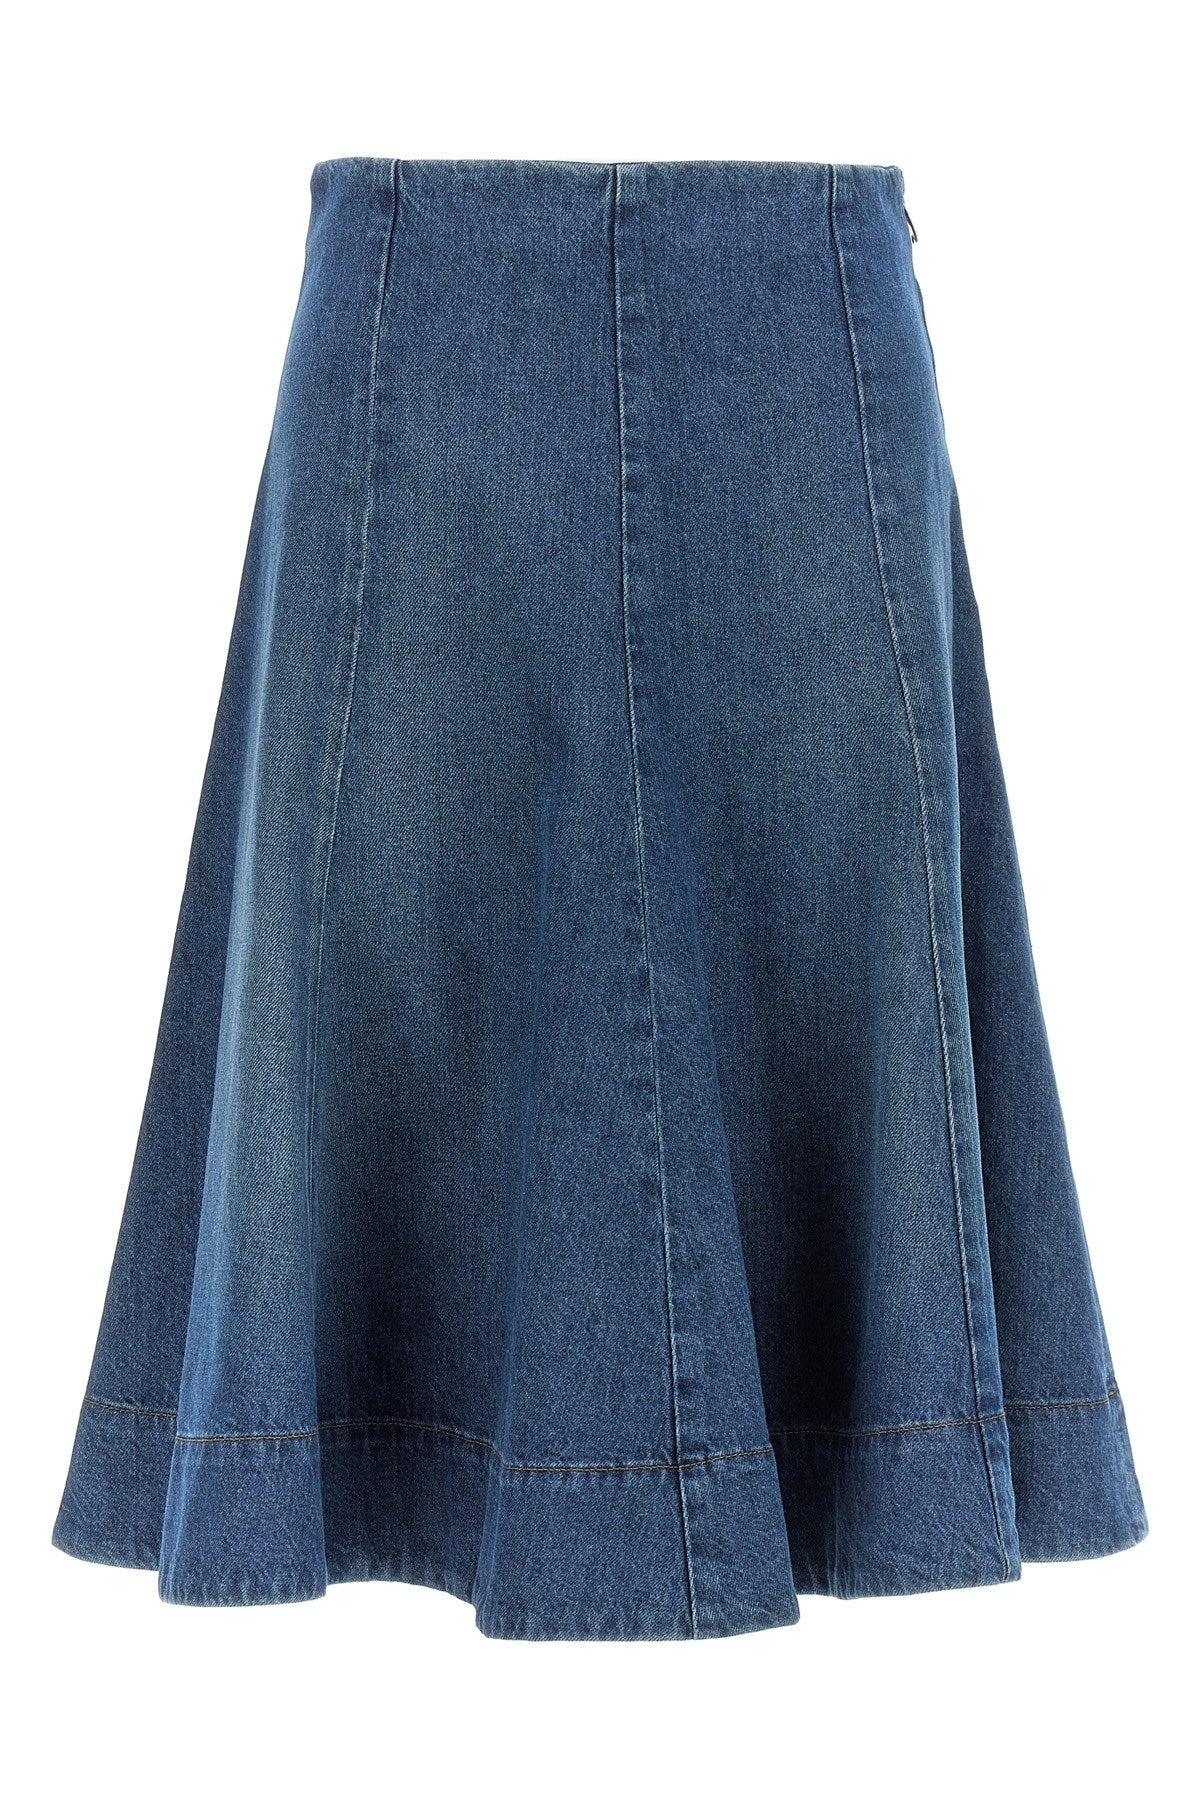 Khaite Women 'Lennox' Skirt - 1